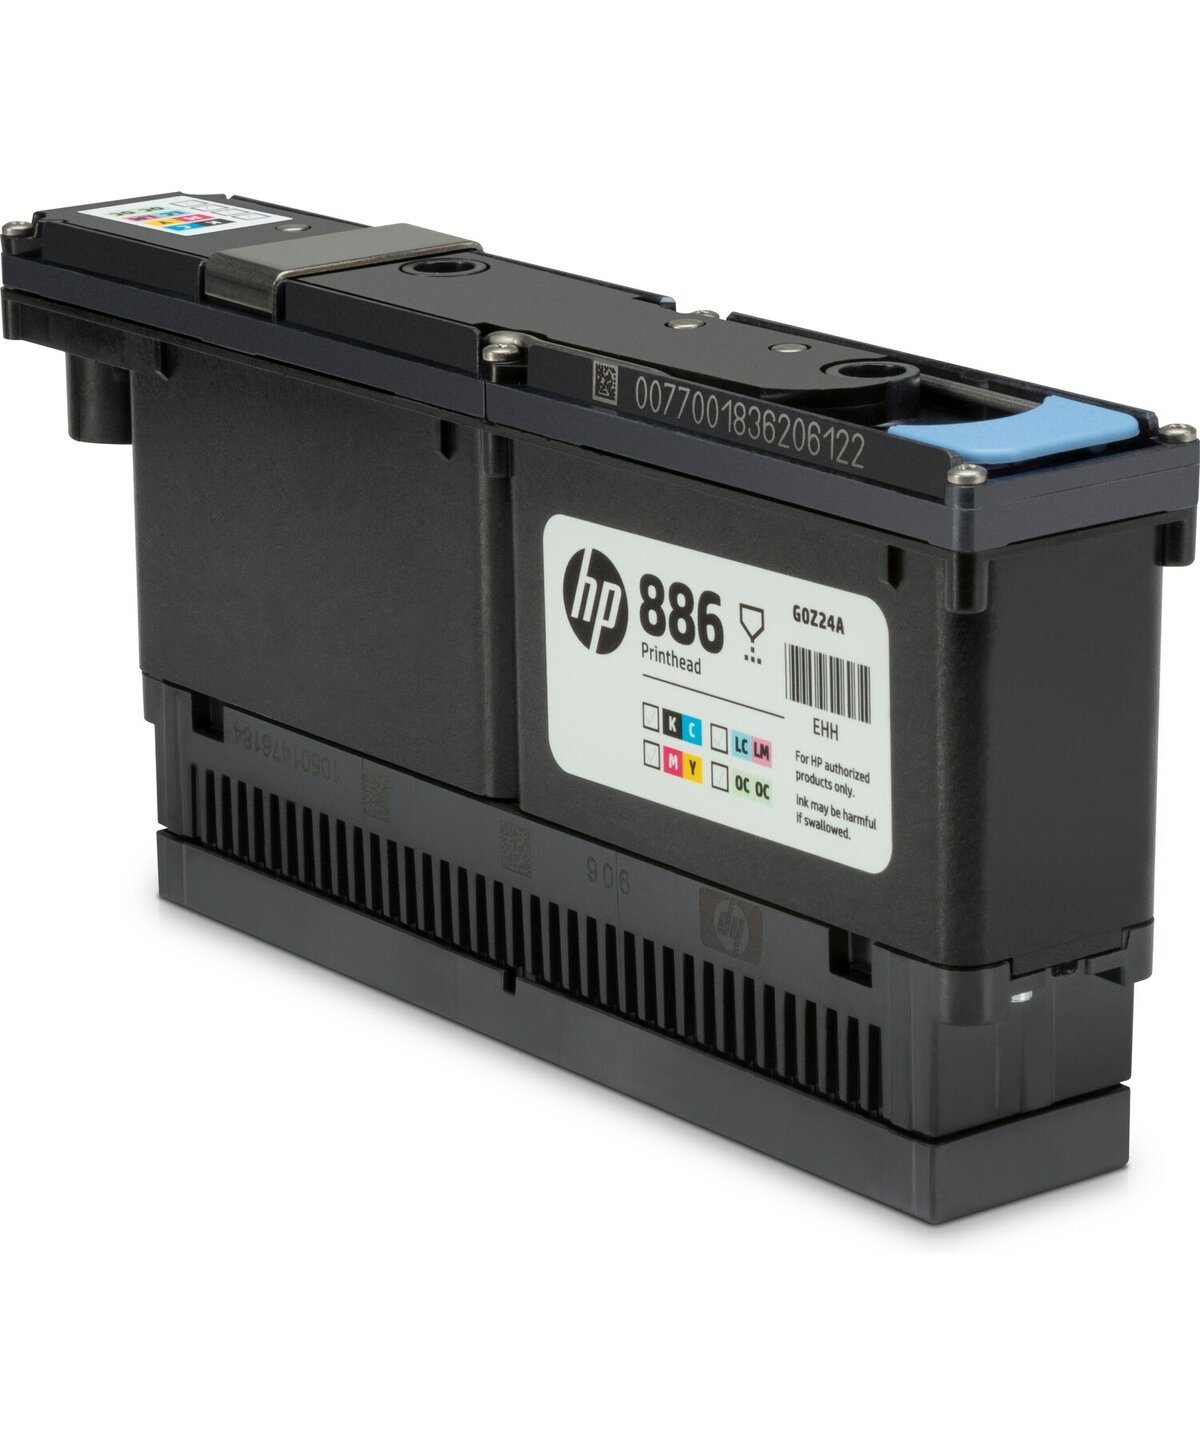 Печатающая головка HP 886, цветной для LX R1000; LX R1000 Plus; LX R2000; LX R2000 Plus (G0Z24A)